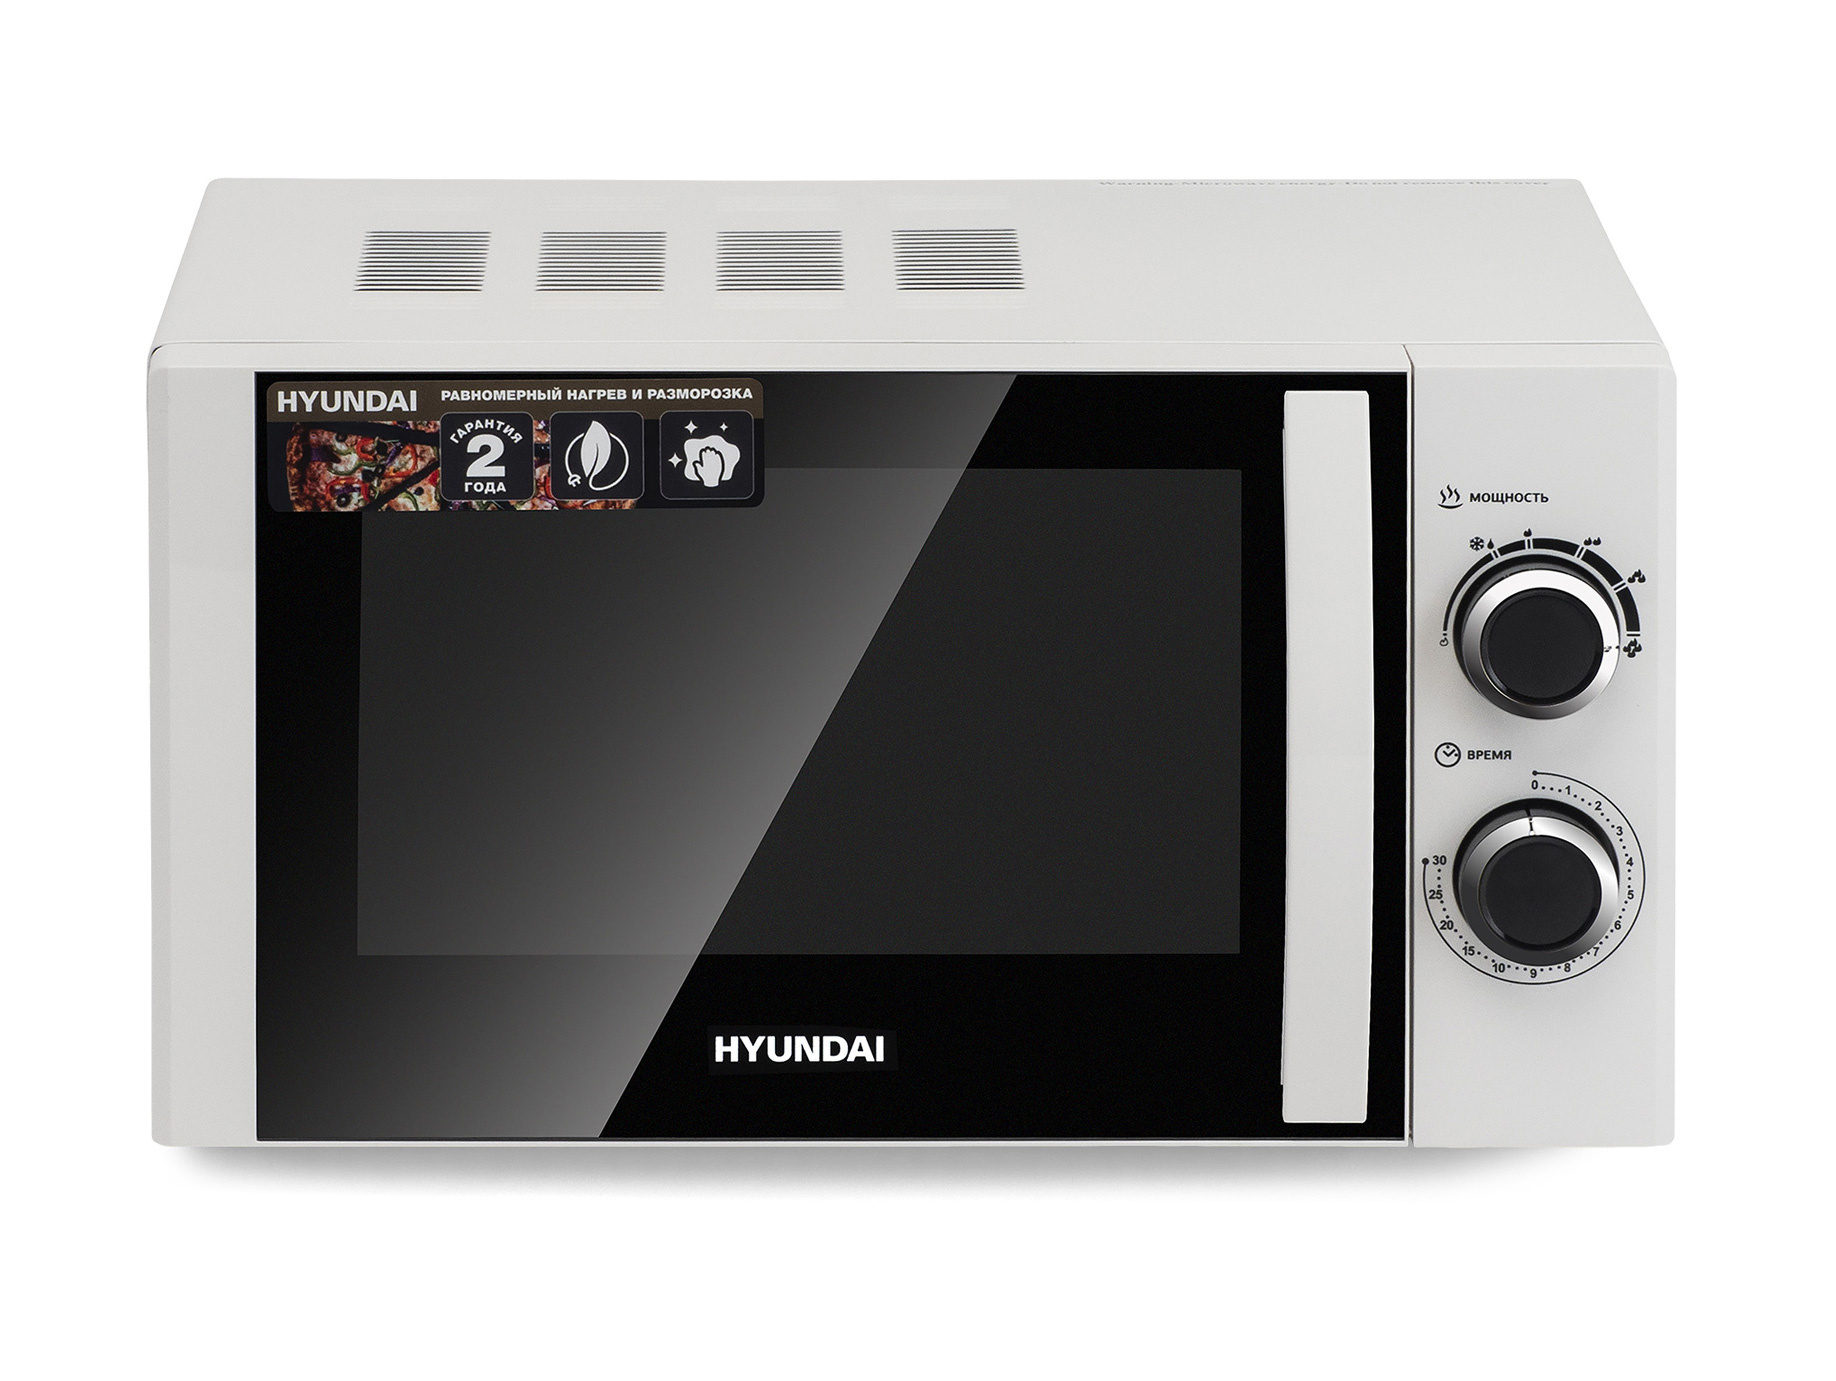 Свч hyundai. Hyundai HYM-m2043. Микроволновая печь Hyundai HYM-m2043. Микроволновая печь Hyundai HYM-m2065. Микроволновая печь Hyundai HYM-m2038.